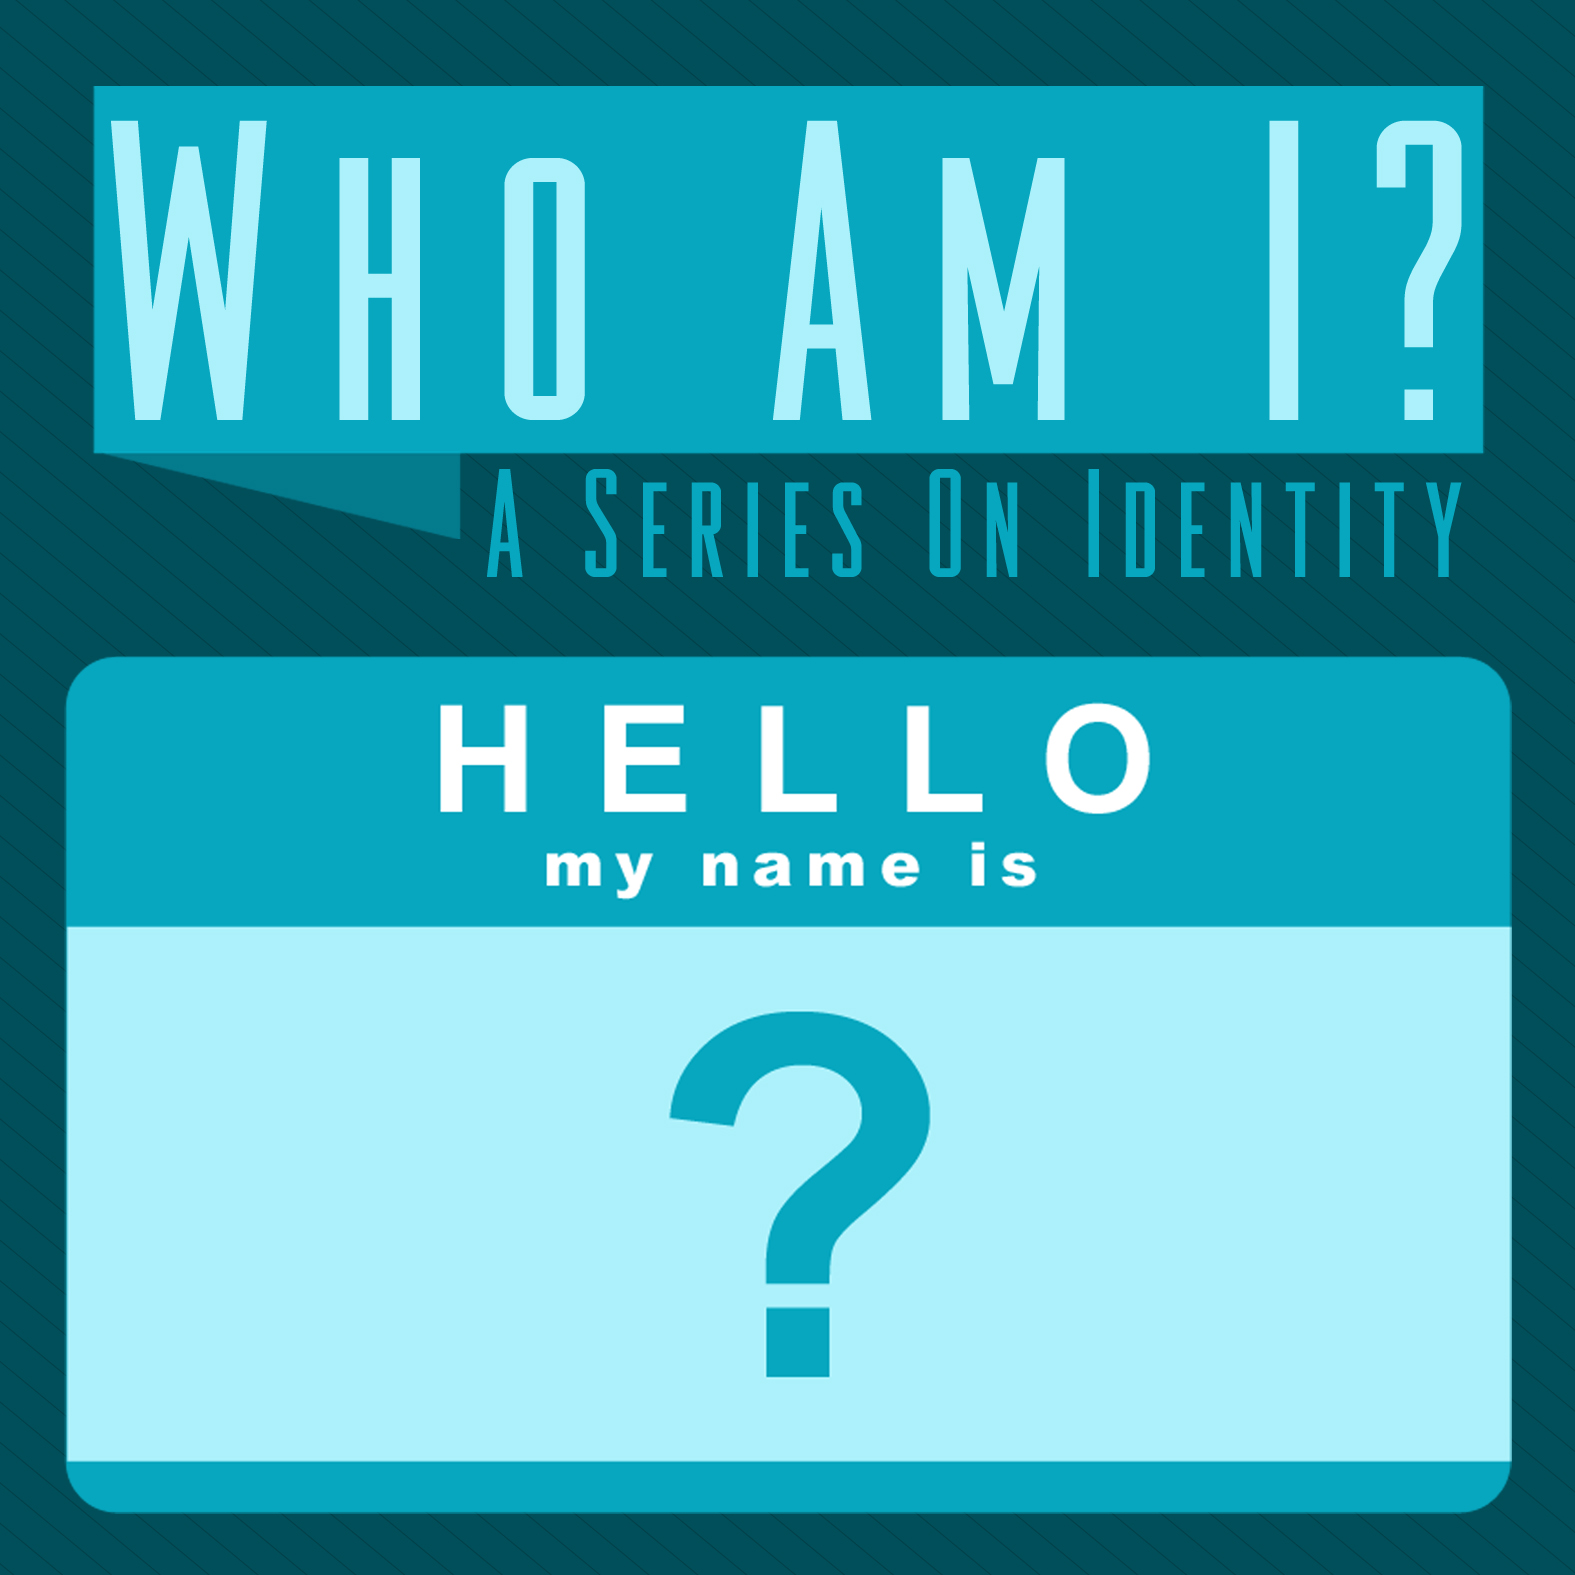 Identity vs Idolatry